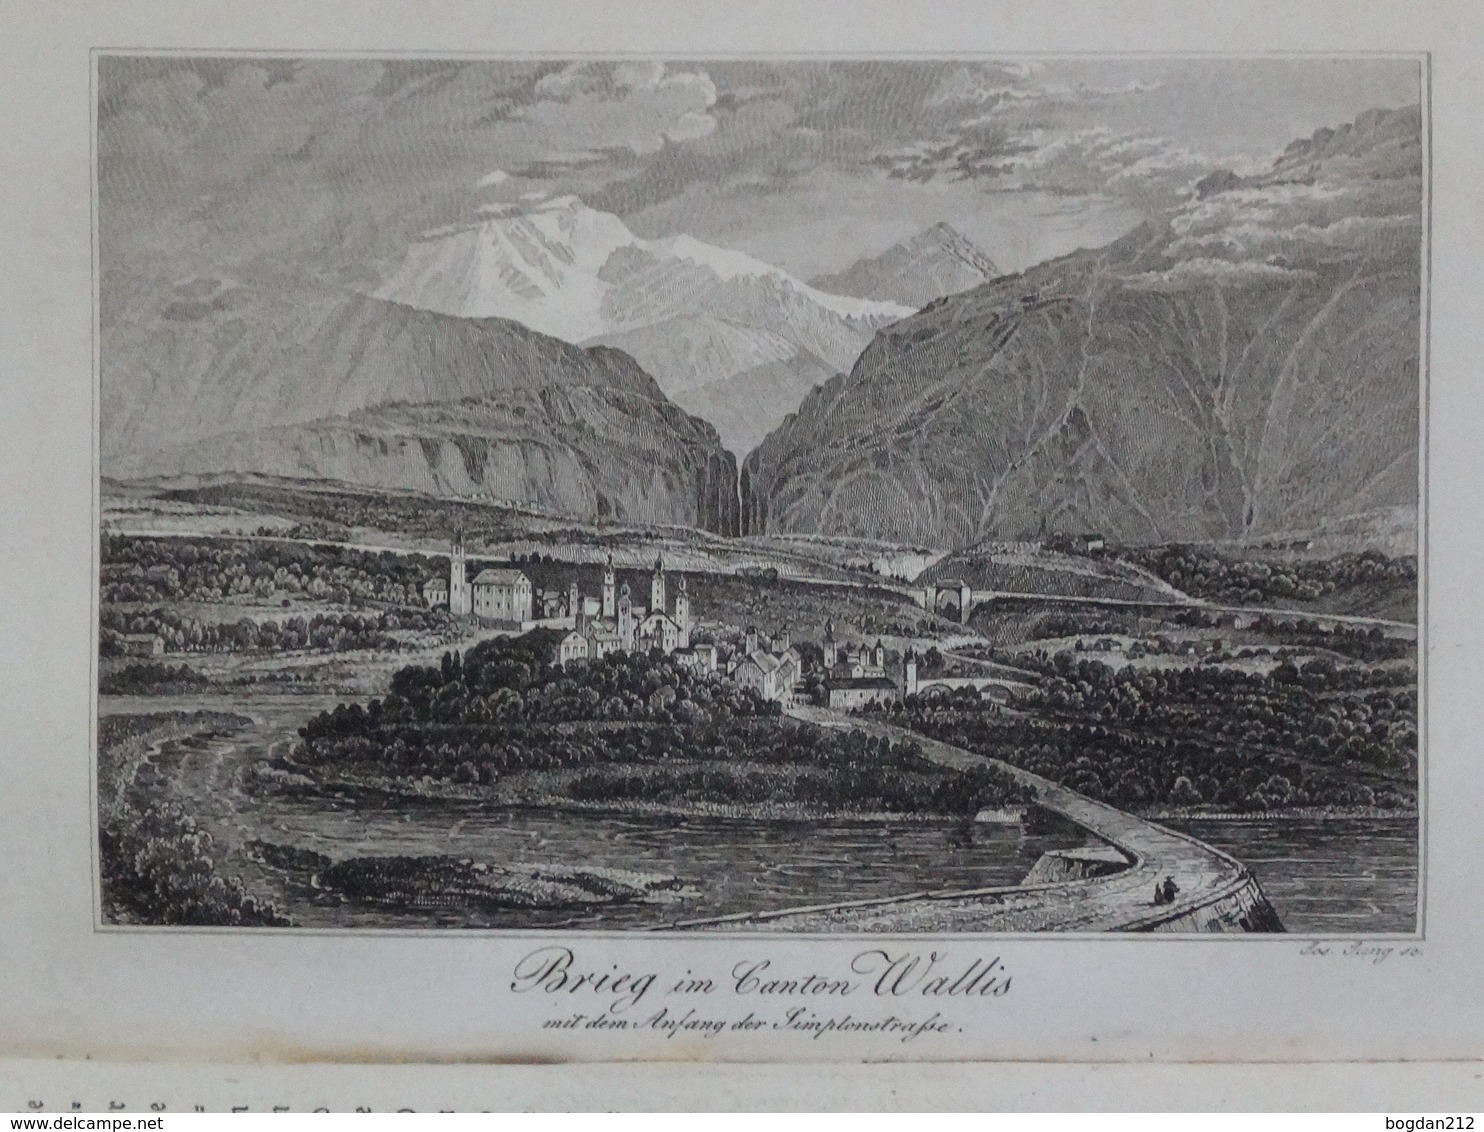 1831 - GEMALDE DER SCHWEIZ, Dr.Neigebaur, 496 Seite mit Alte Stiche (Kupfern).